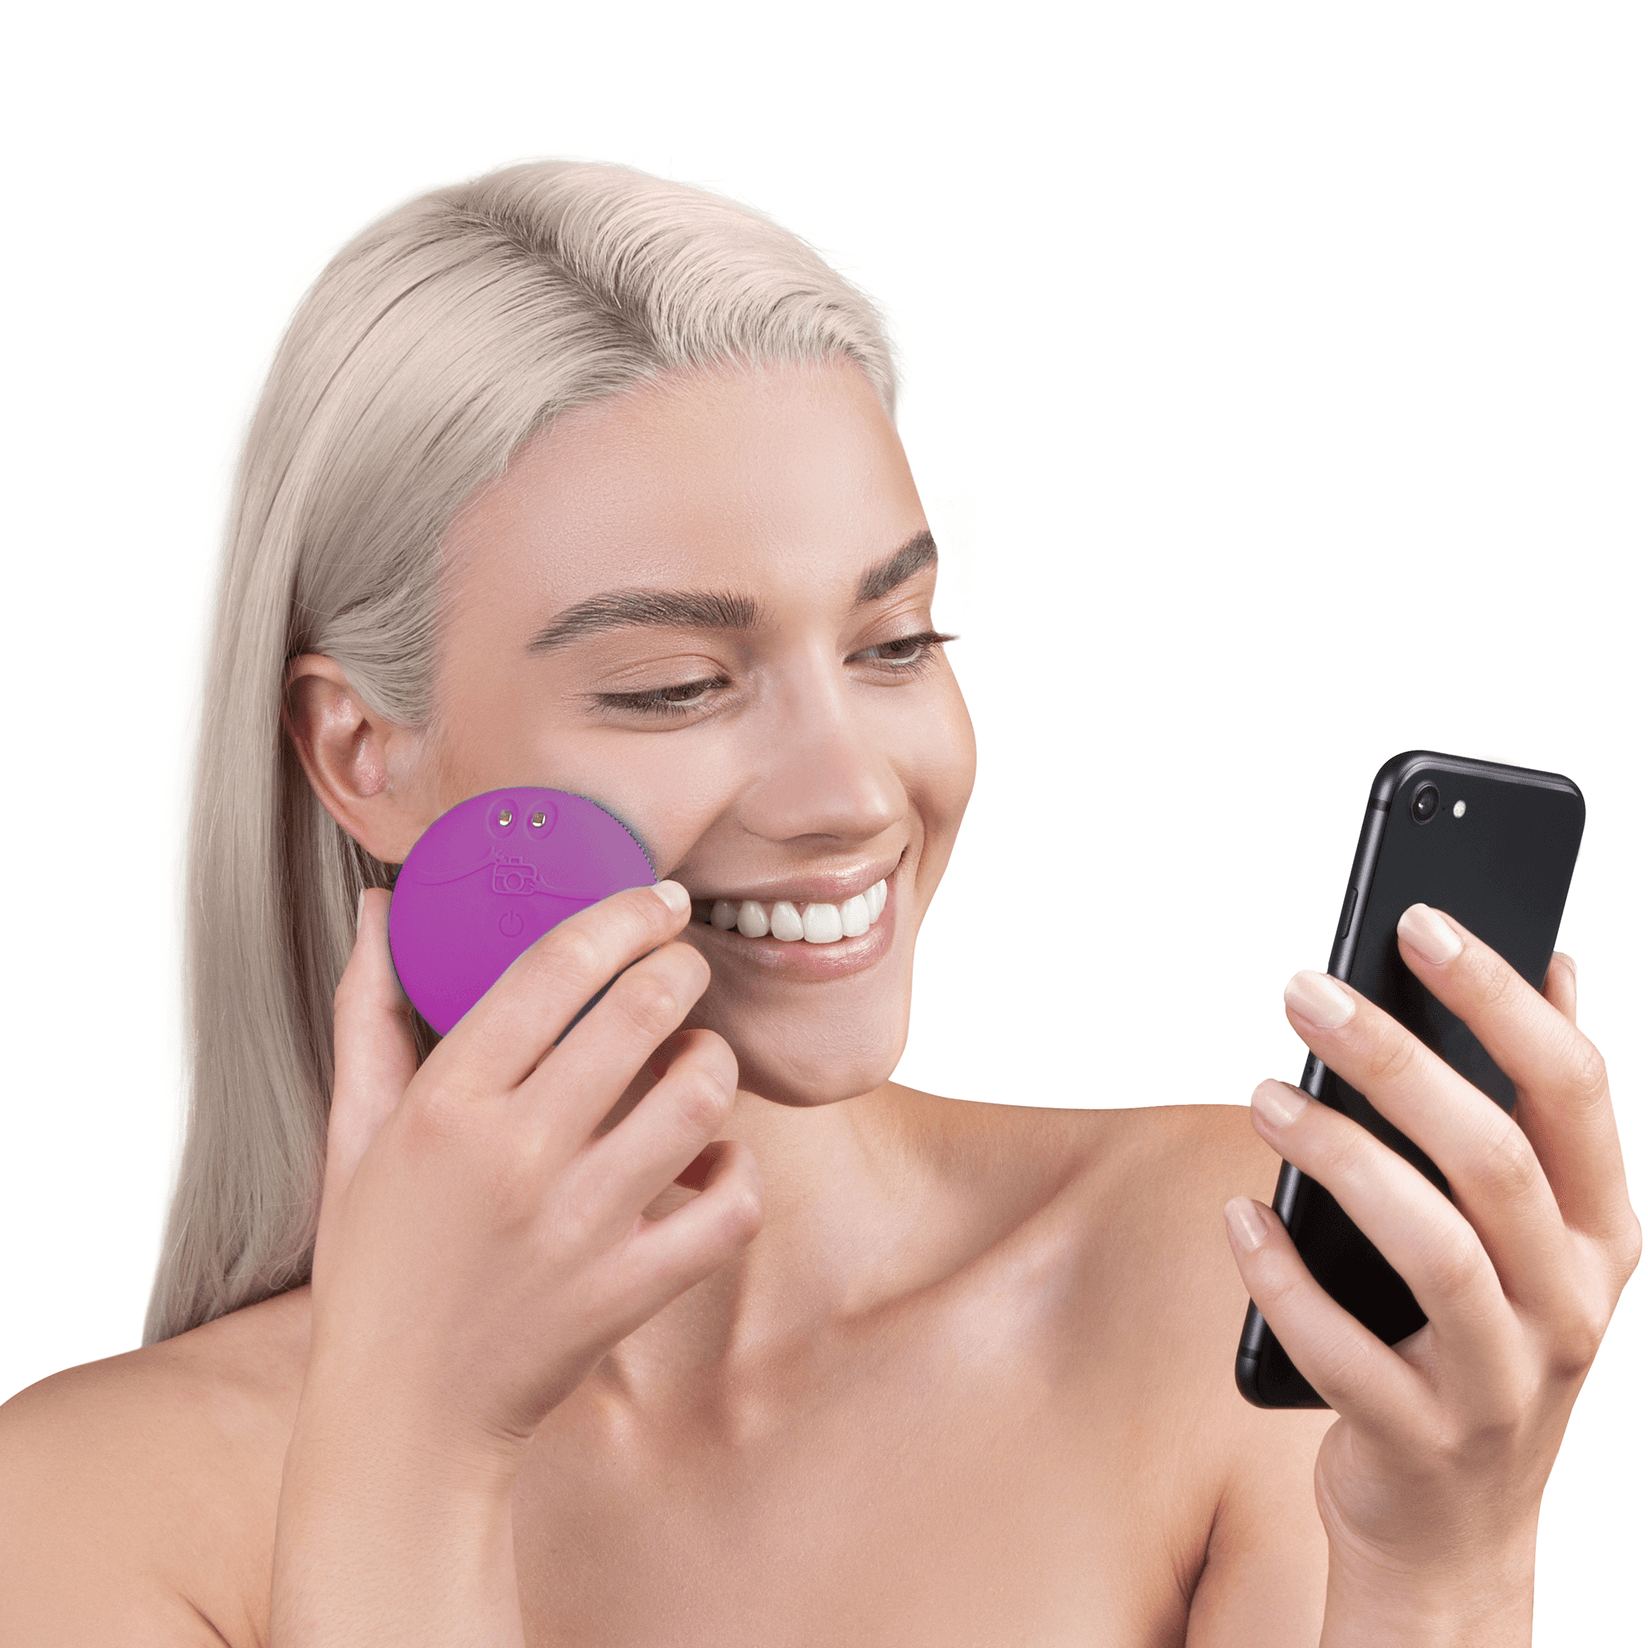 Selected image for FOREO LUNA Fofo Purple pametni uređaj za čišćenje lica za senzorima za analizu kože